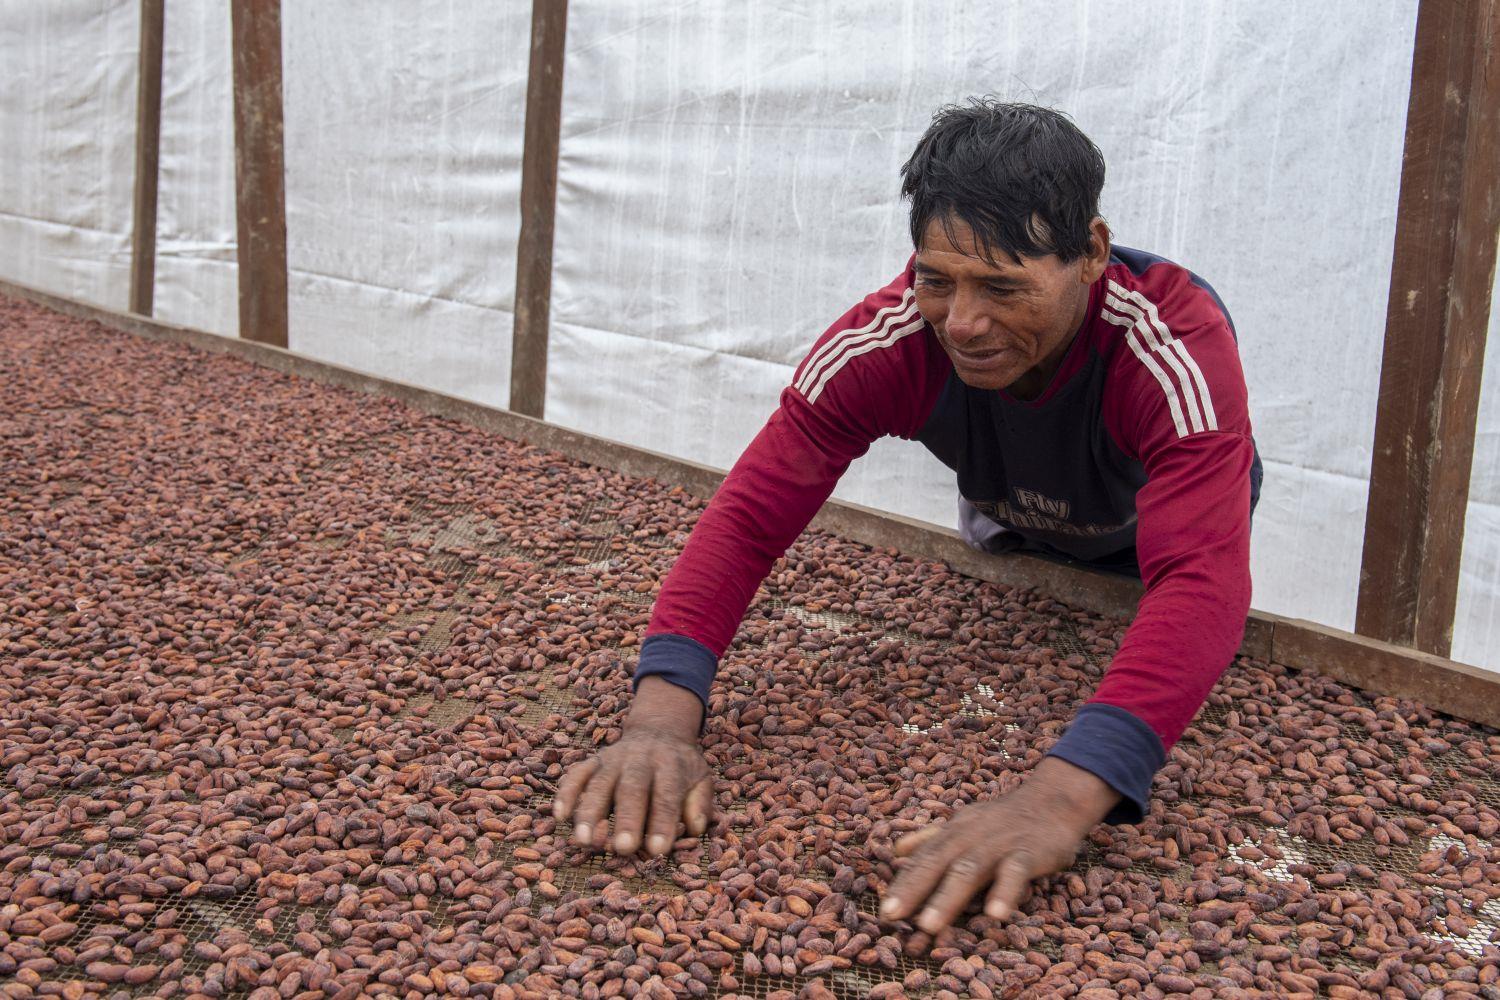 Während seiner Reise besucht Dariush Ghobad die Genossenschaft COOPSSUR. Dort werden unter anderem in einer Anlage Kakaobohnen fermentiert.